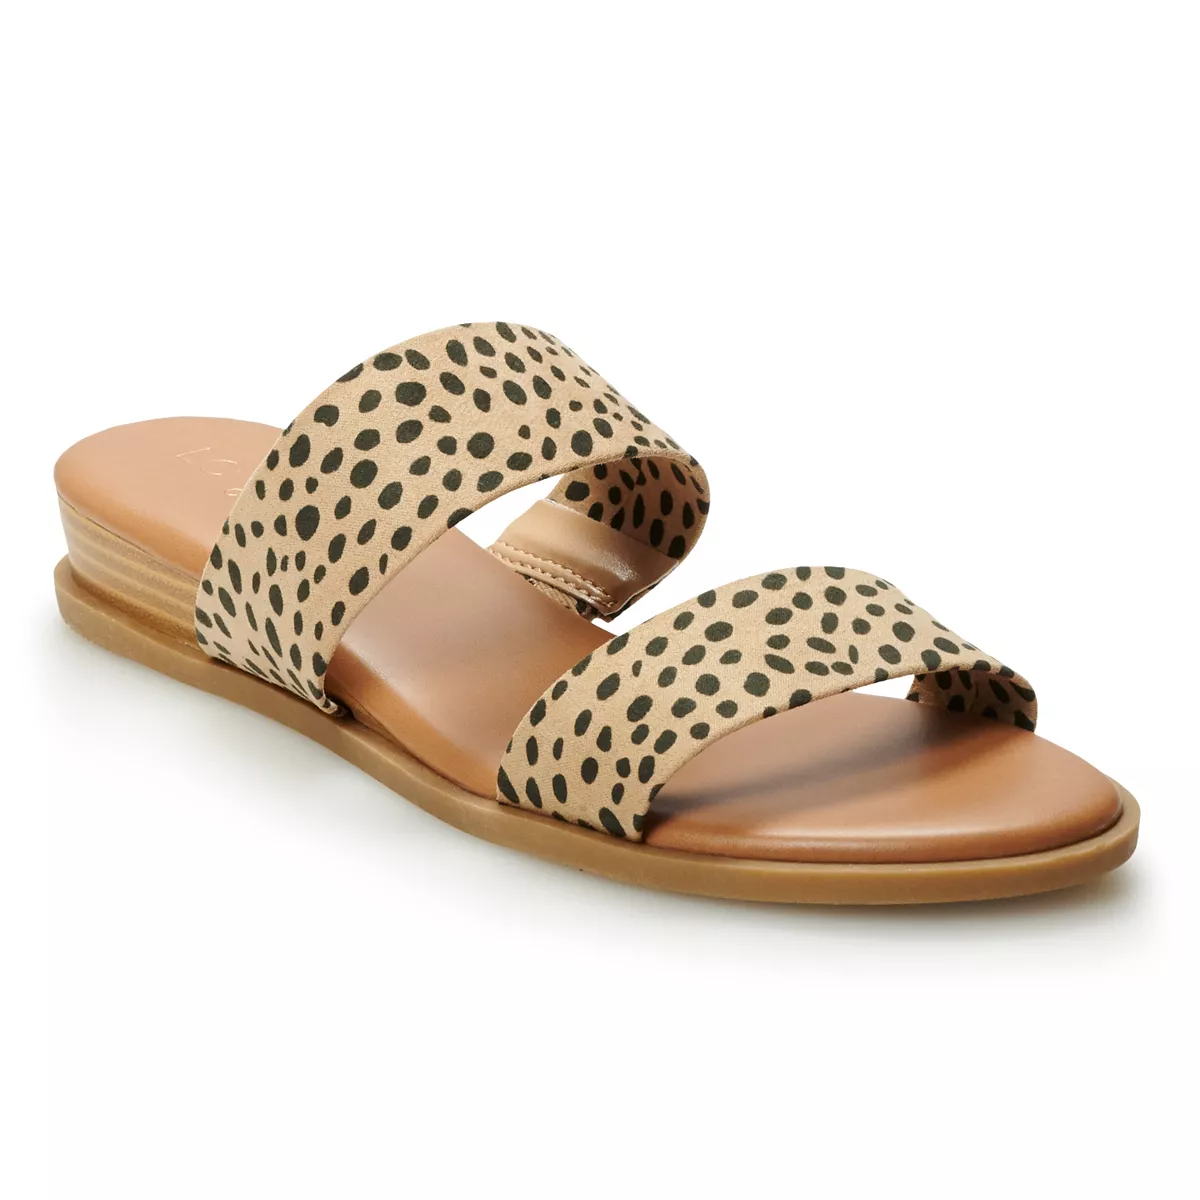 LC Lauren Conrad + Mint Wedge Sandals